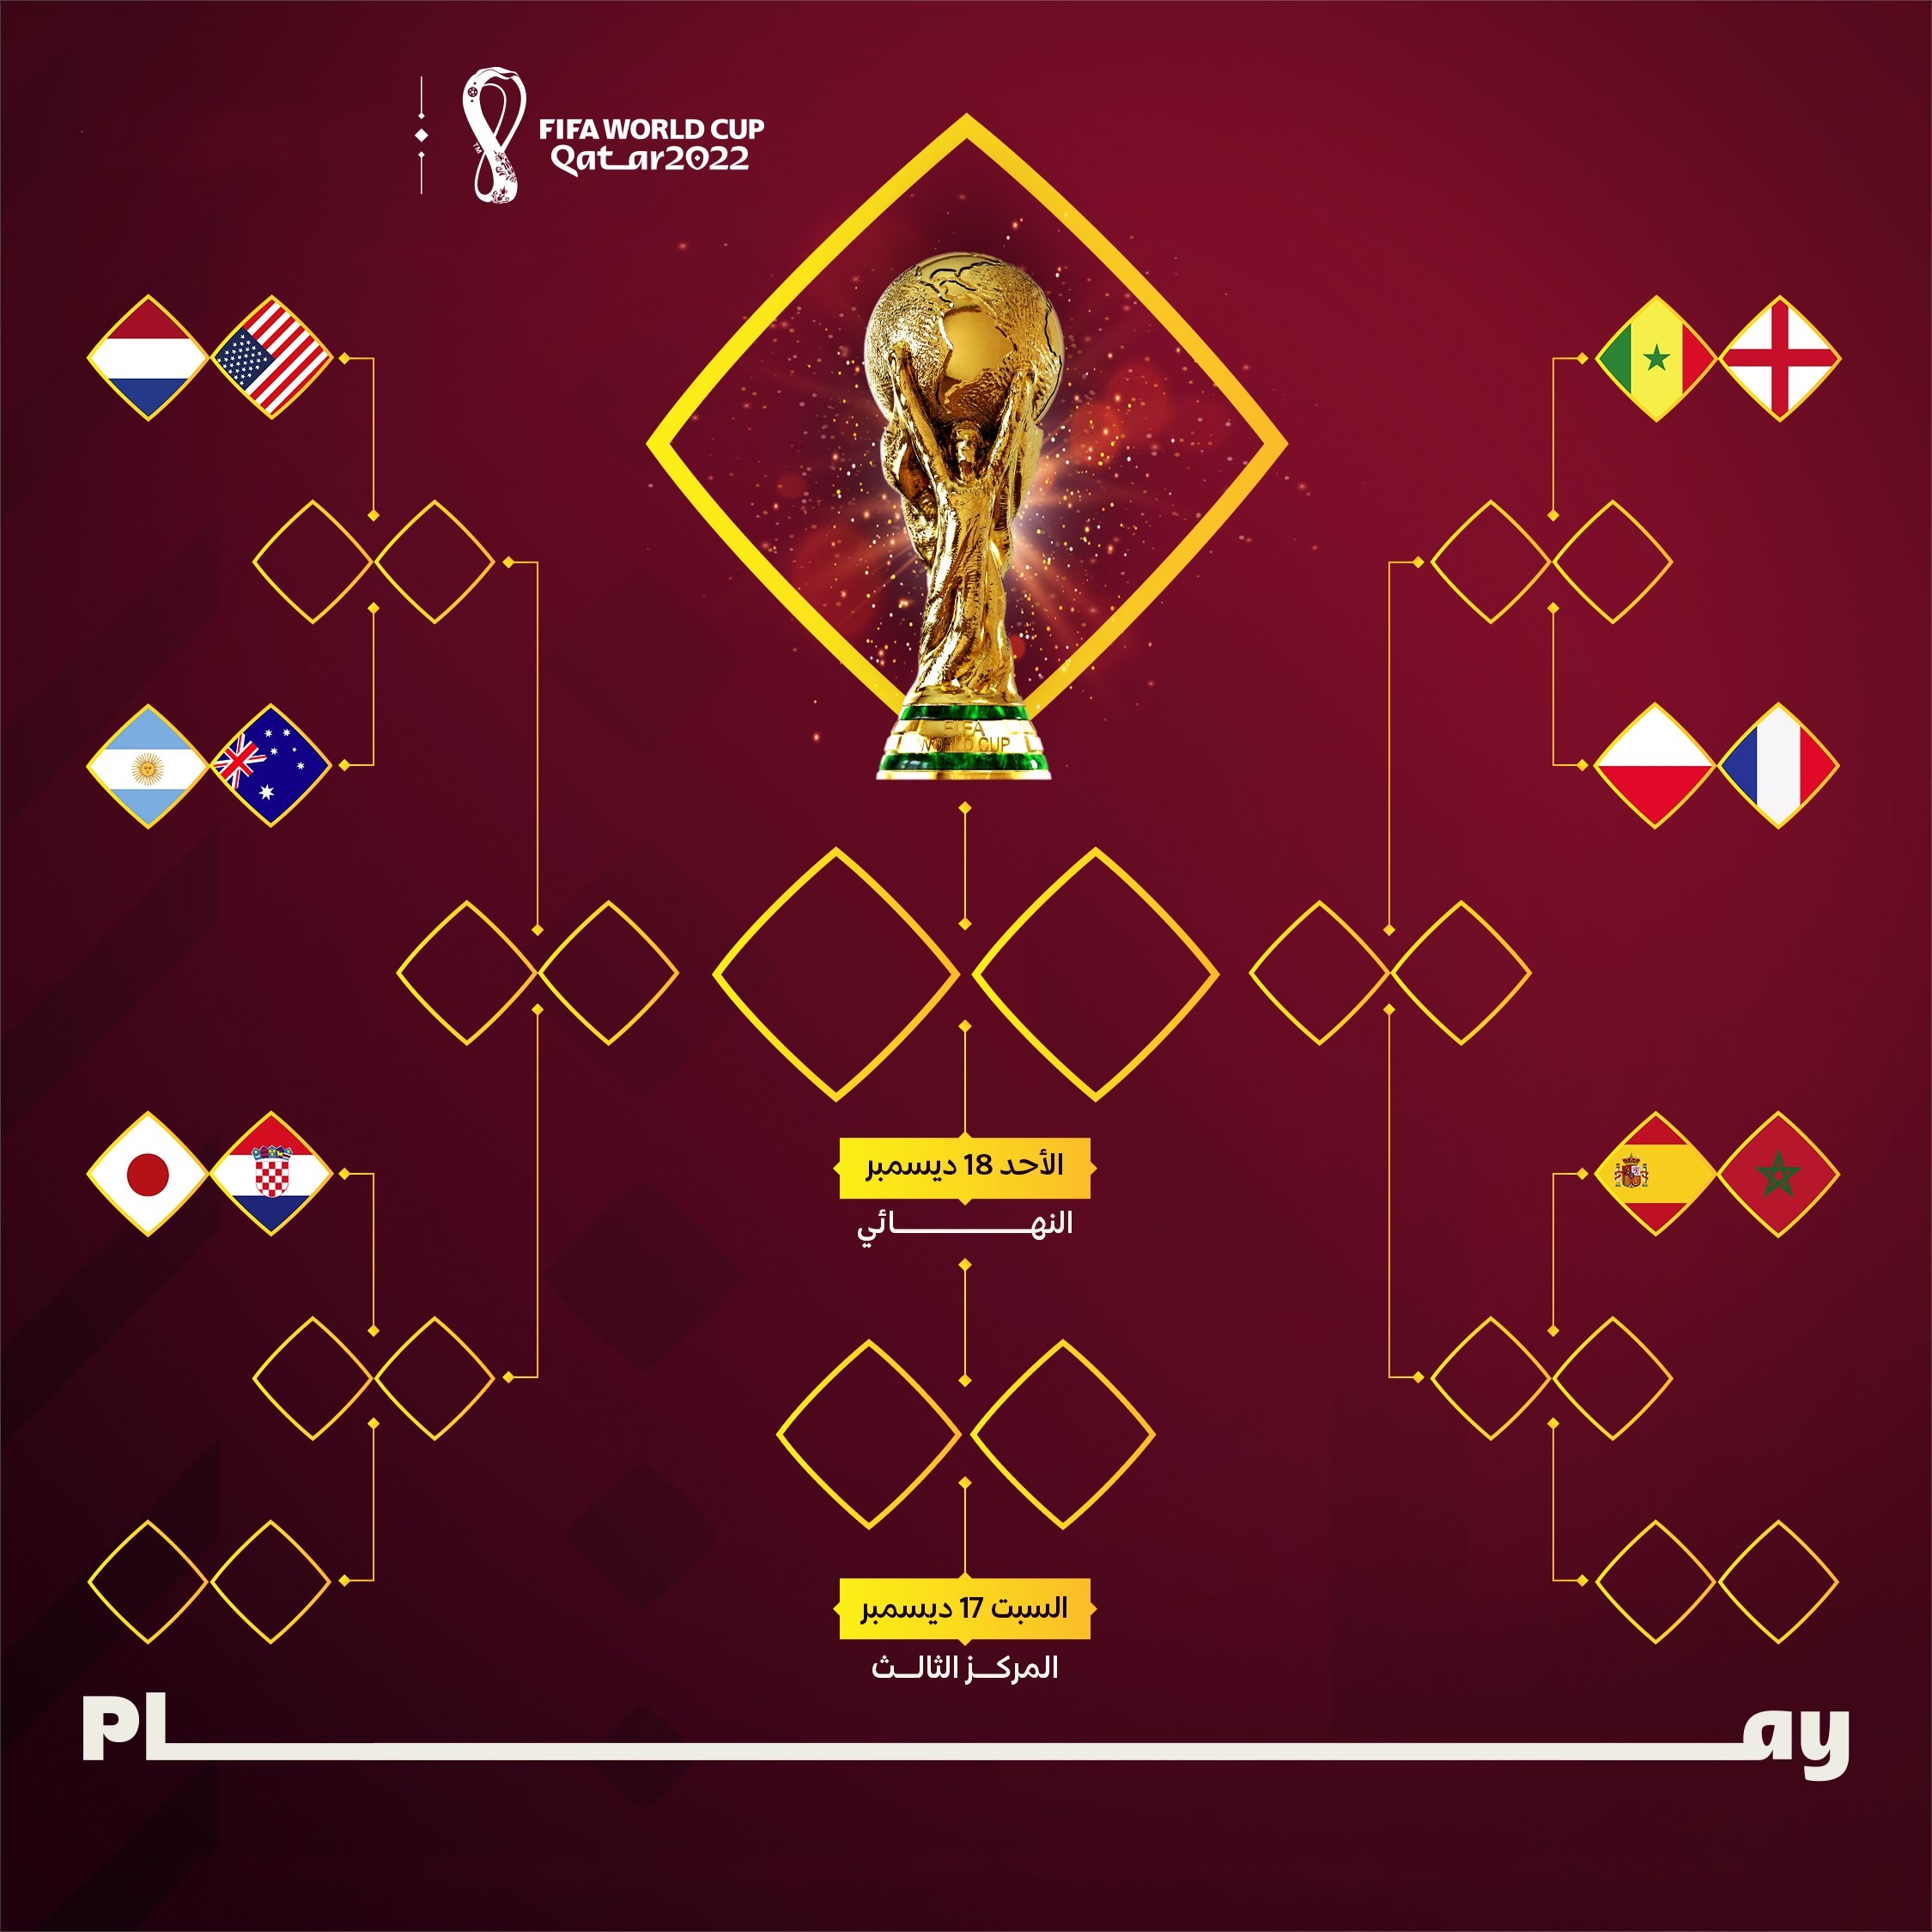 المنتخبات المتأهلة إلى دور الـ16 والمواجهات في كأس العالم قطر 2022 قبل اليوم الأخير في الجولة الثالثةمن دور المجموعات